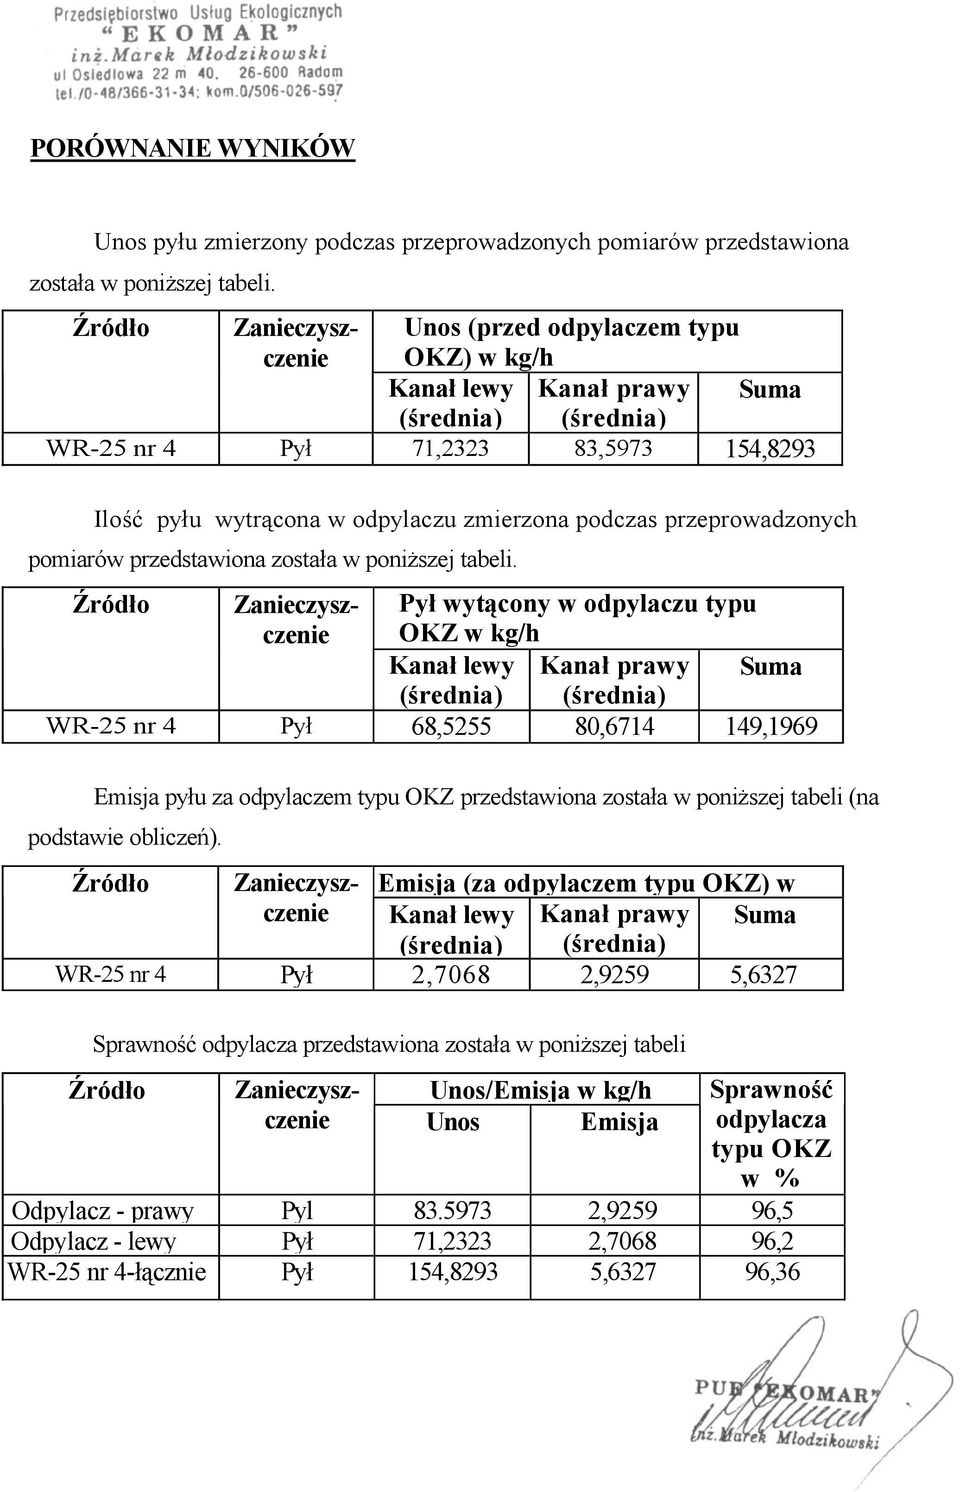 Emisja pyłu za odpylaczem typu OKZ przedstawiona została w poniższej tabeli (na podstawie obliczeń).